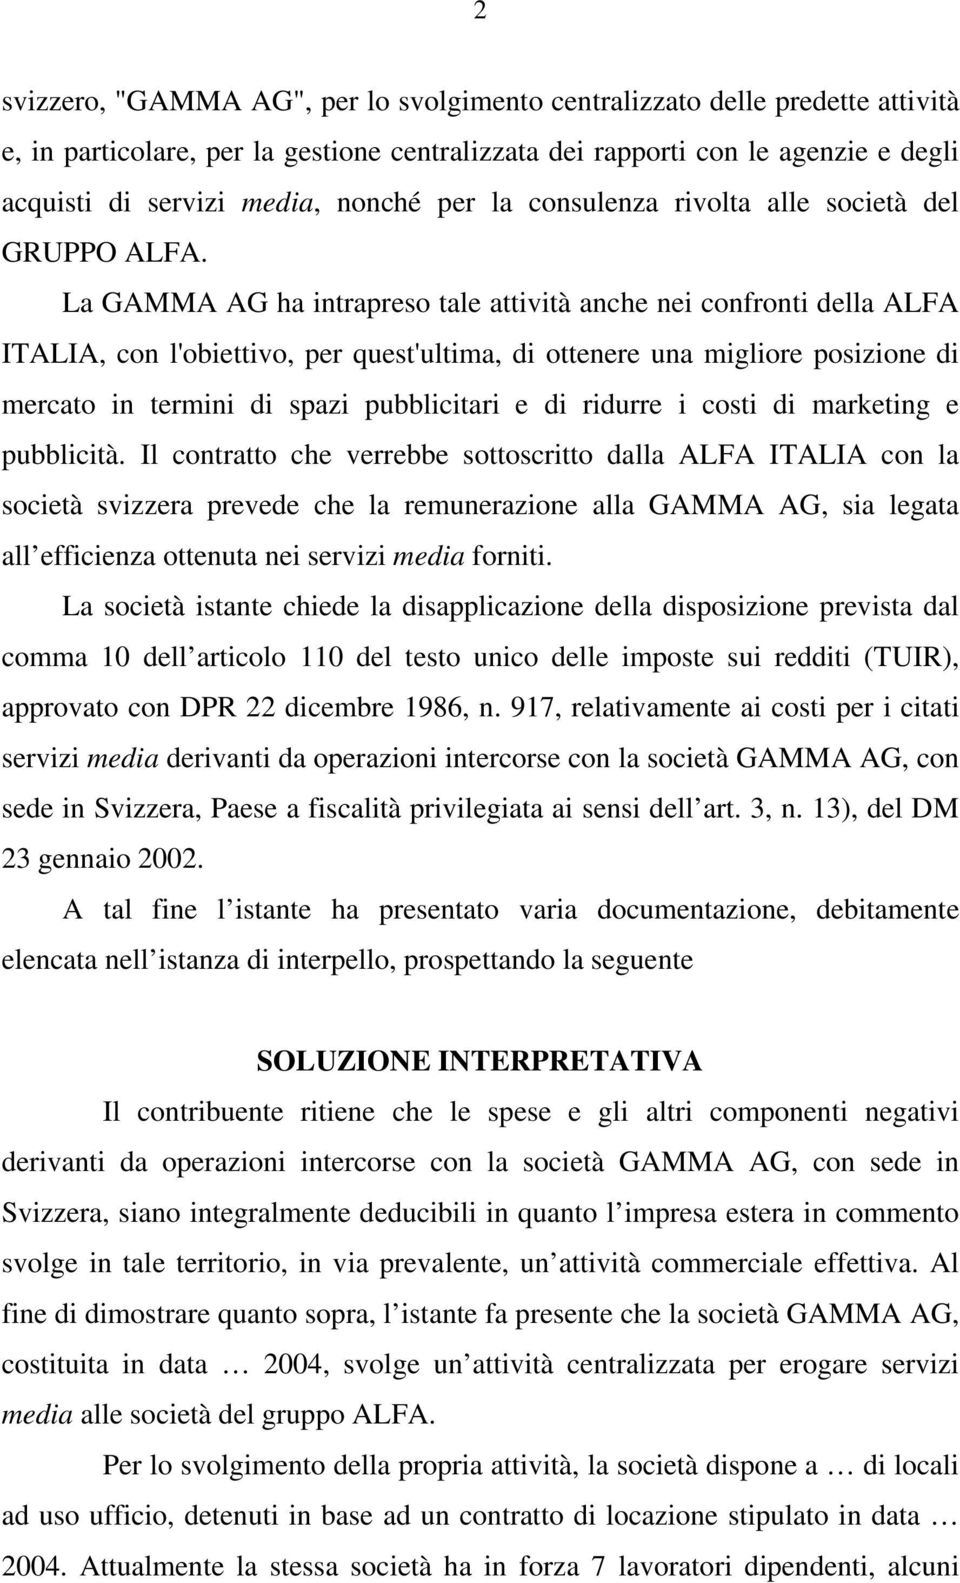 La GAMMA AG ha intrapreso tale attività anche nei confronti della ALFA ITALIA, con l'obiettivo, per quest'ultima, di ottenere una migliore posizione di mercato in termini di spazi pubblicitari e di